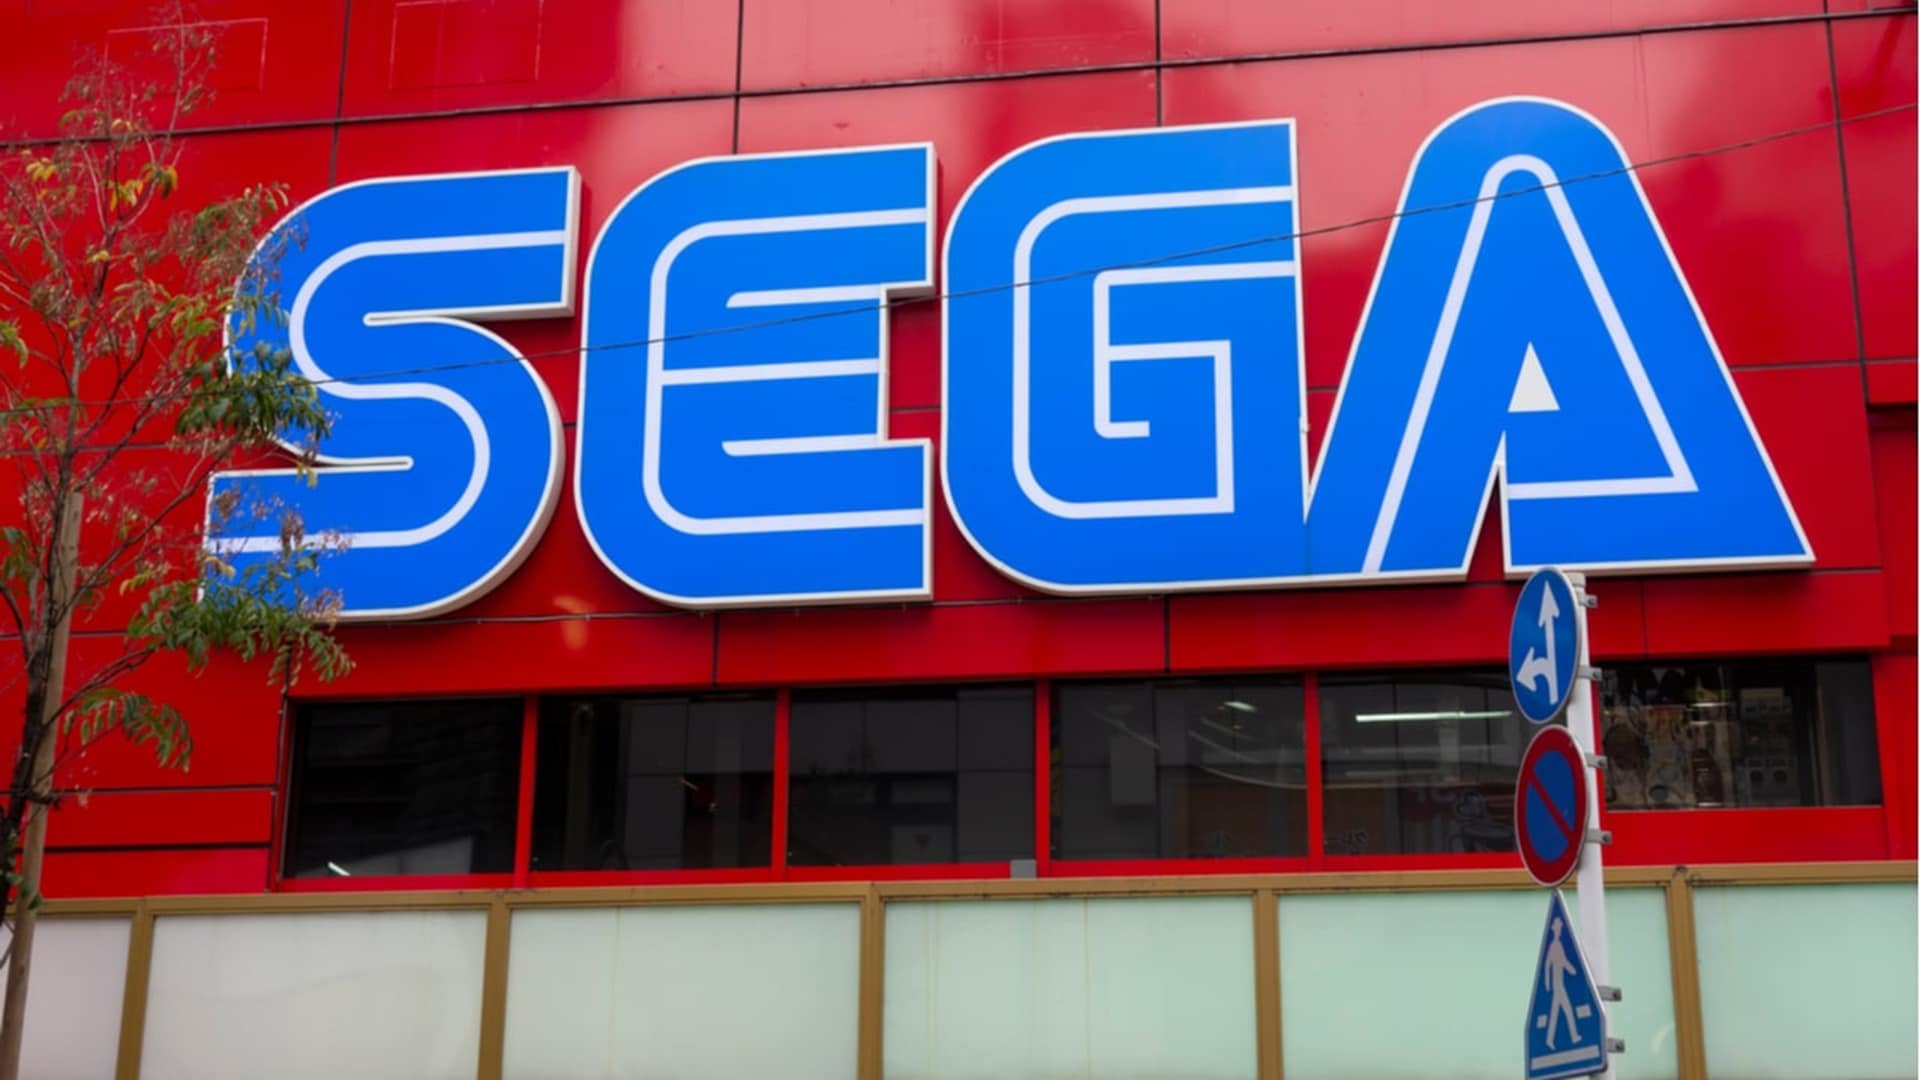 Sega parece estar planeando su propio metaverso de juegos, GamersRD